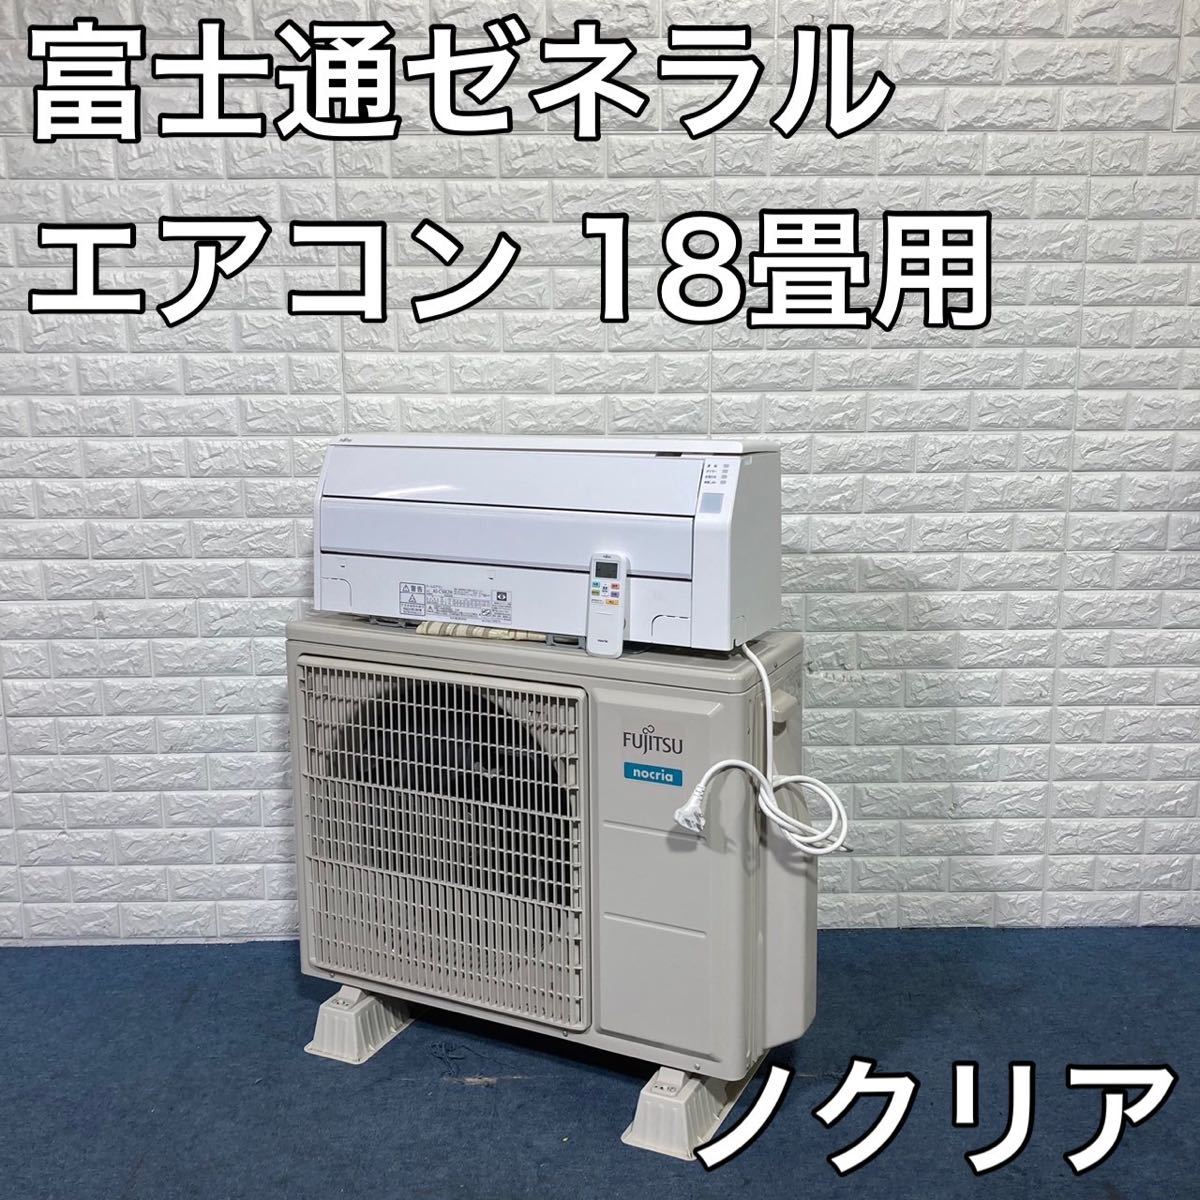 富士通ゼネラル エアコン ノクリア AS-C56K2W 18畳用 B130 www